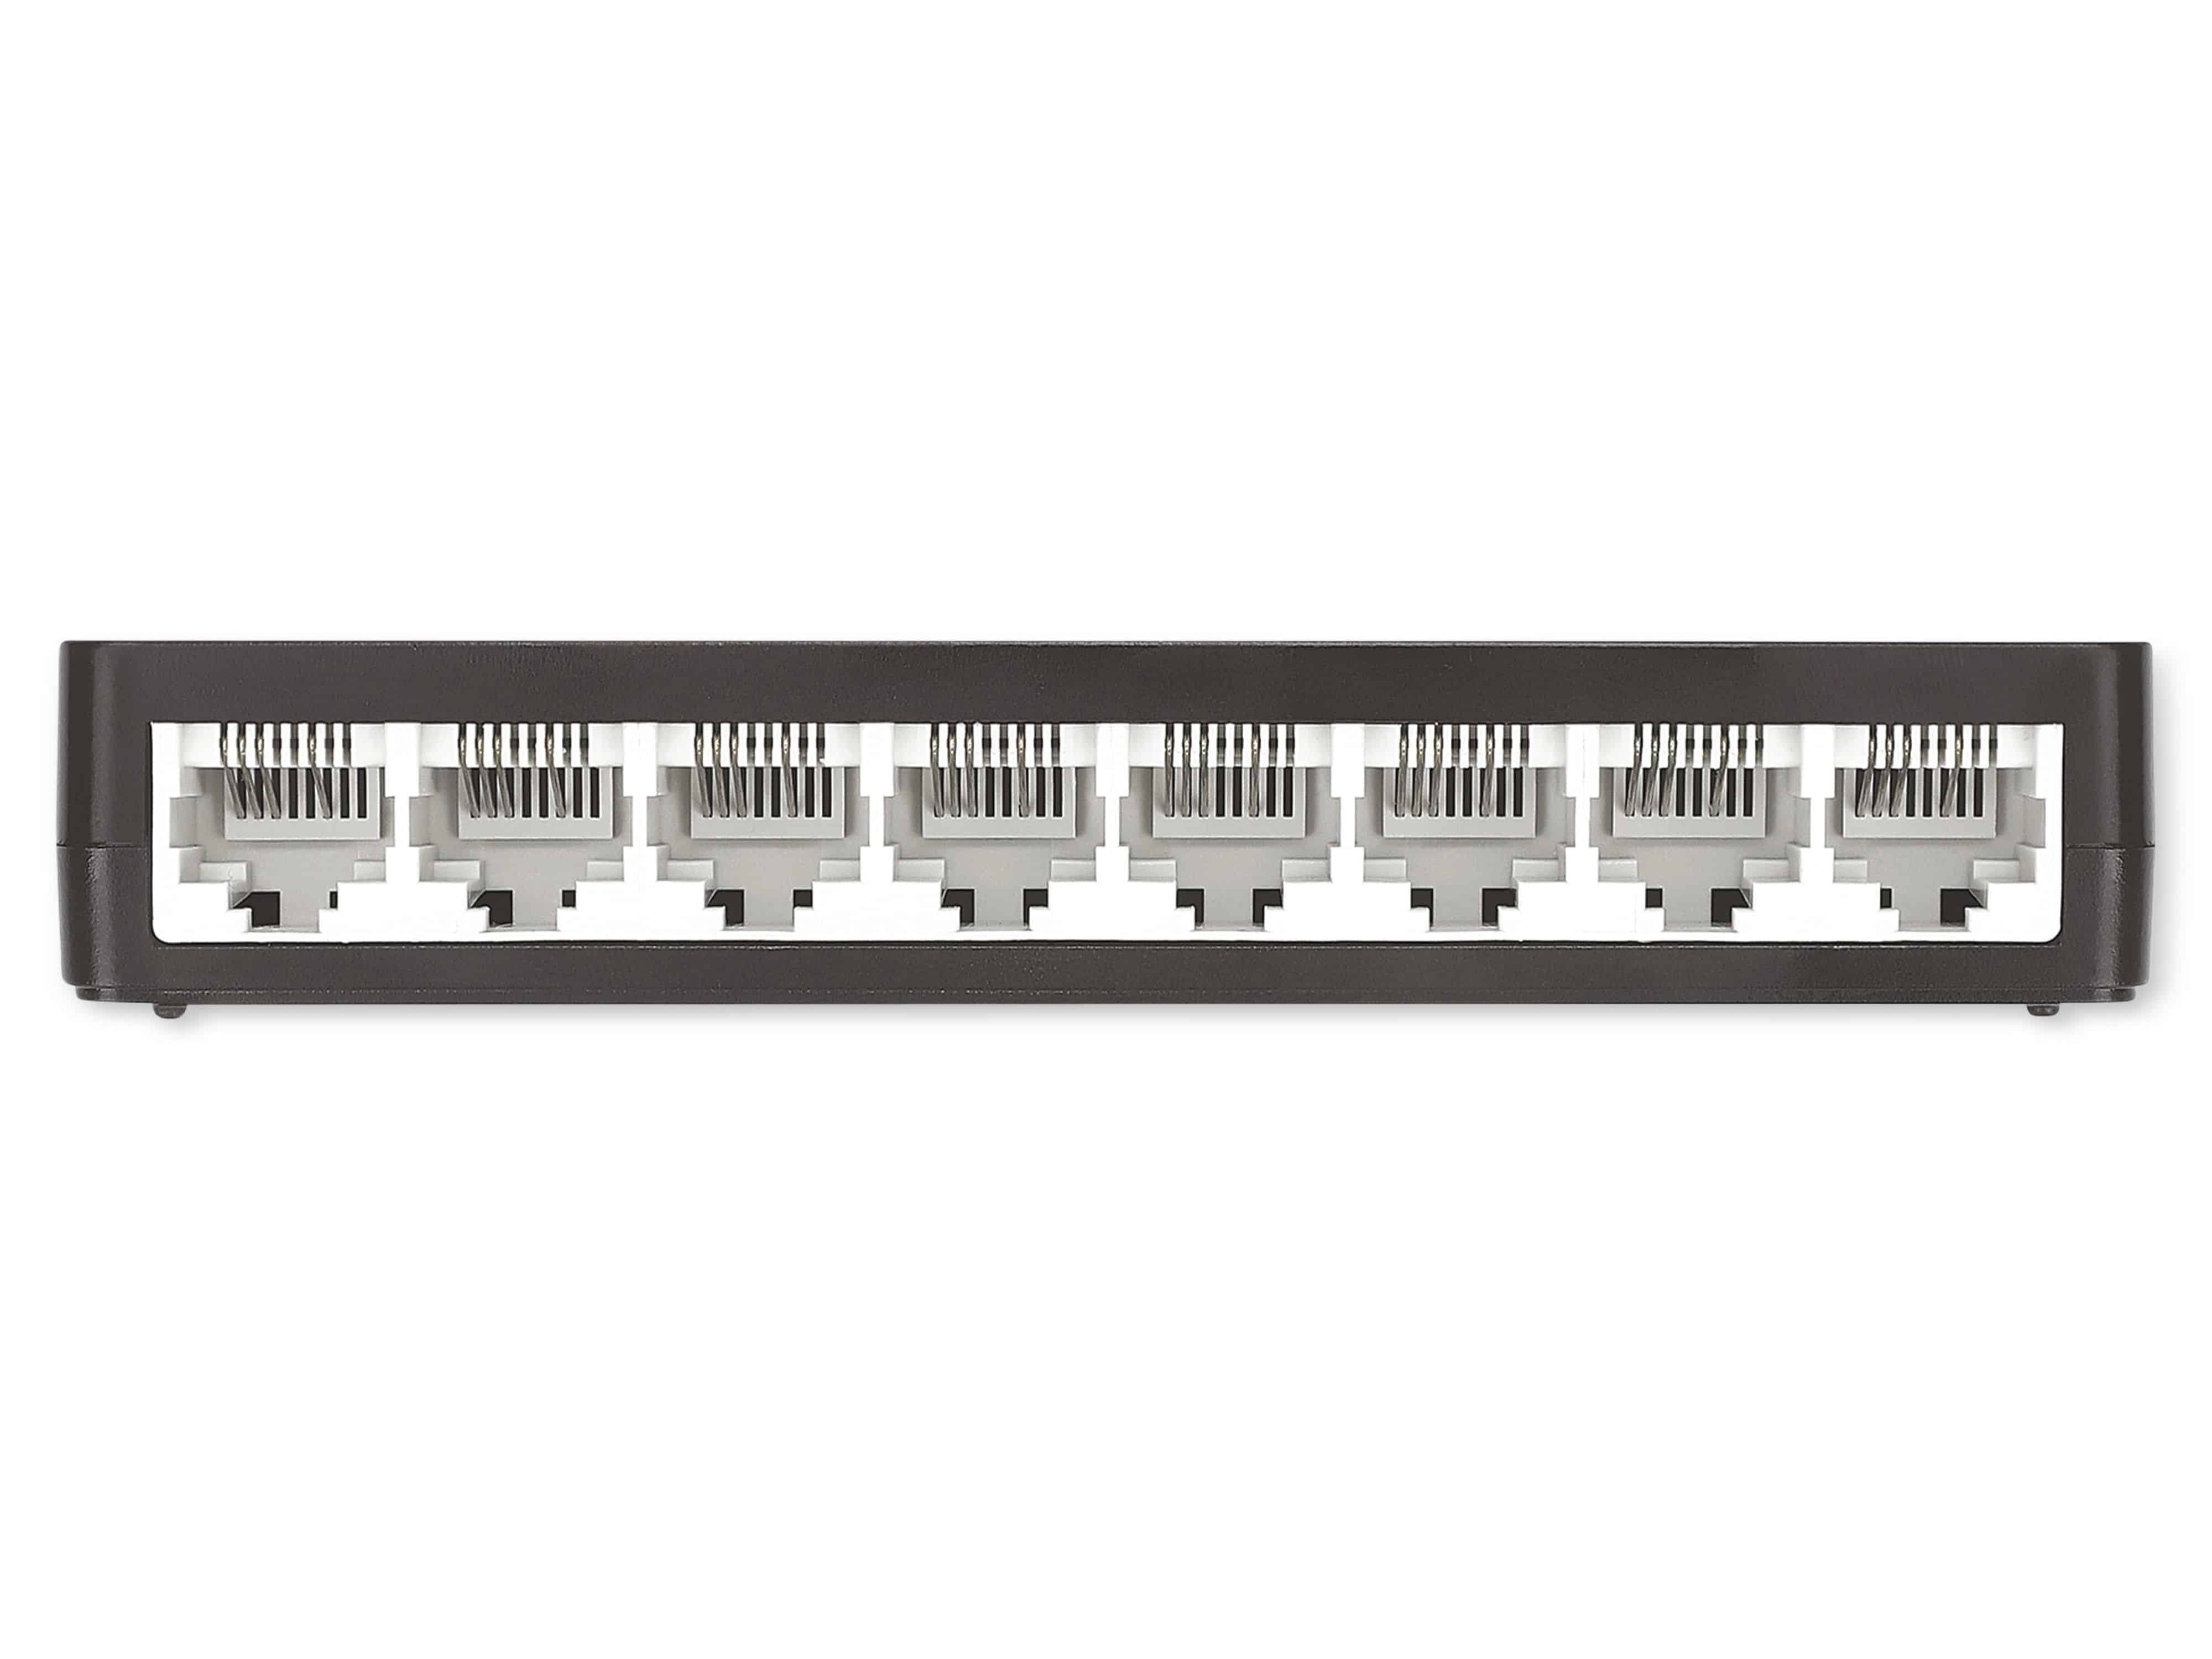 Ethernet Netzwerk-Switch 561730 8-Port, INTELLINET schwarz Intellinet Switch